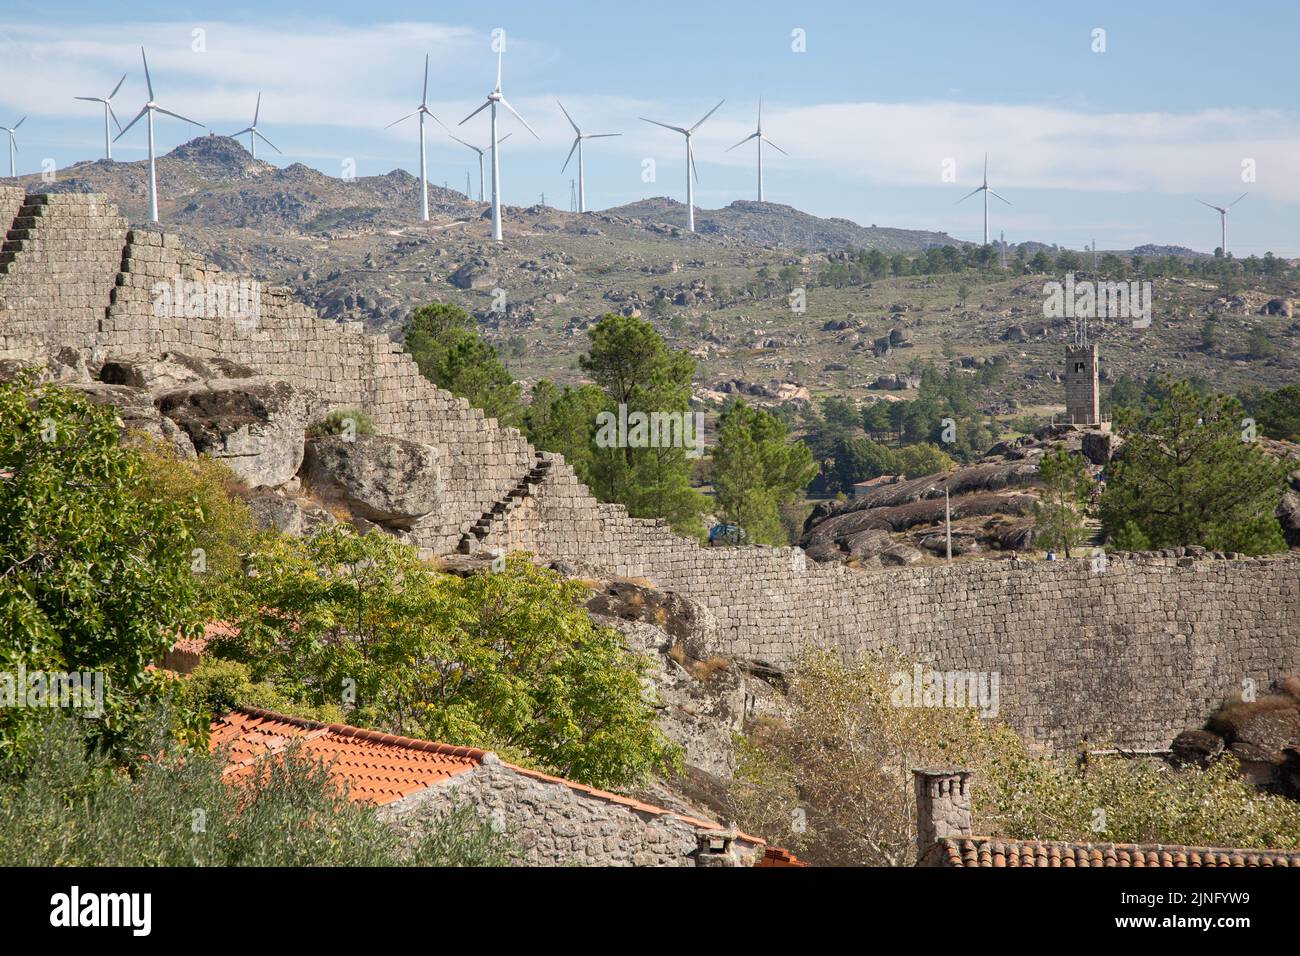 Vista con turbine eoliche e villaggio, Sortelha; Portogallo Foto Stock